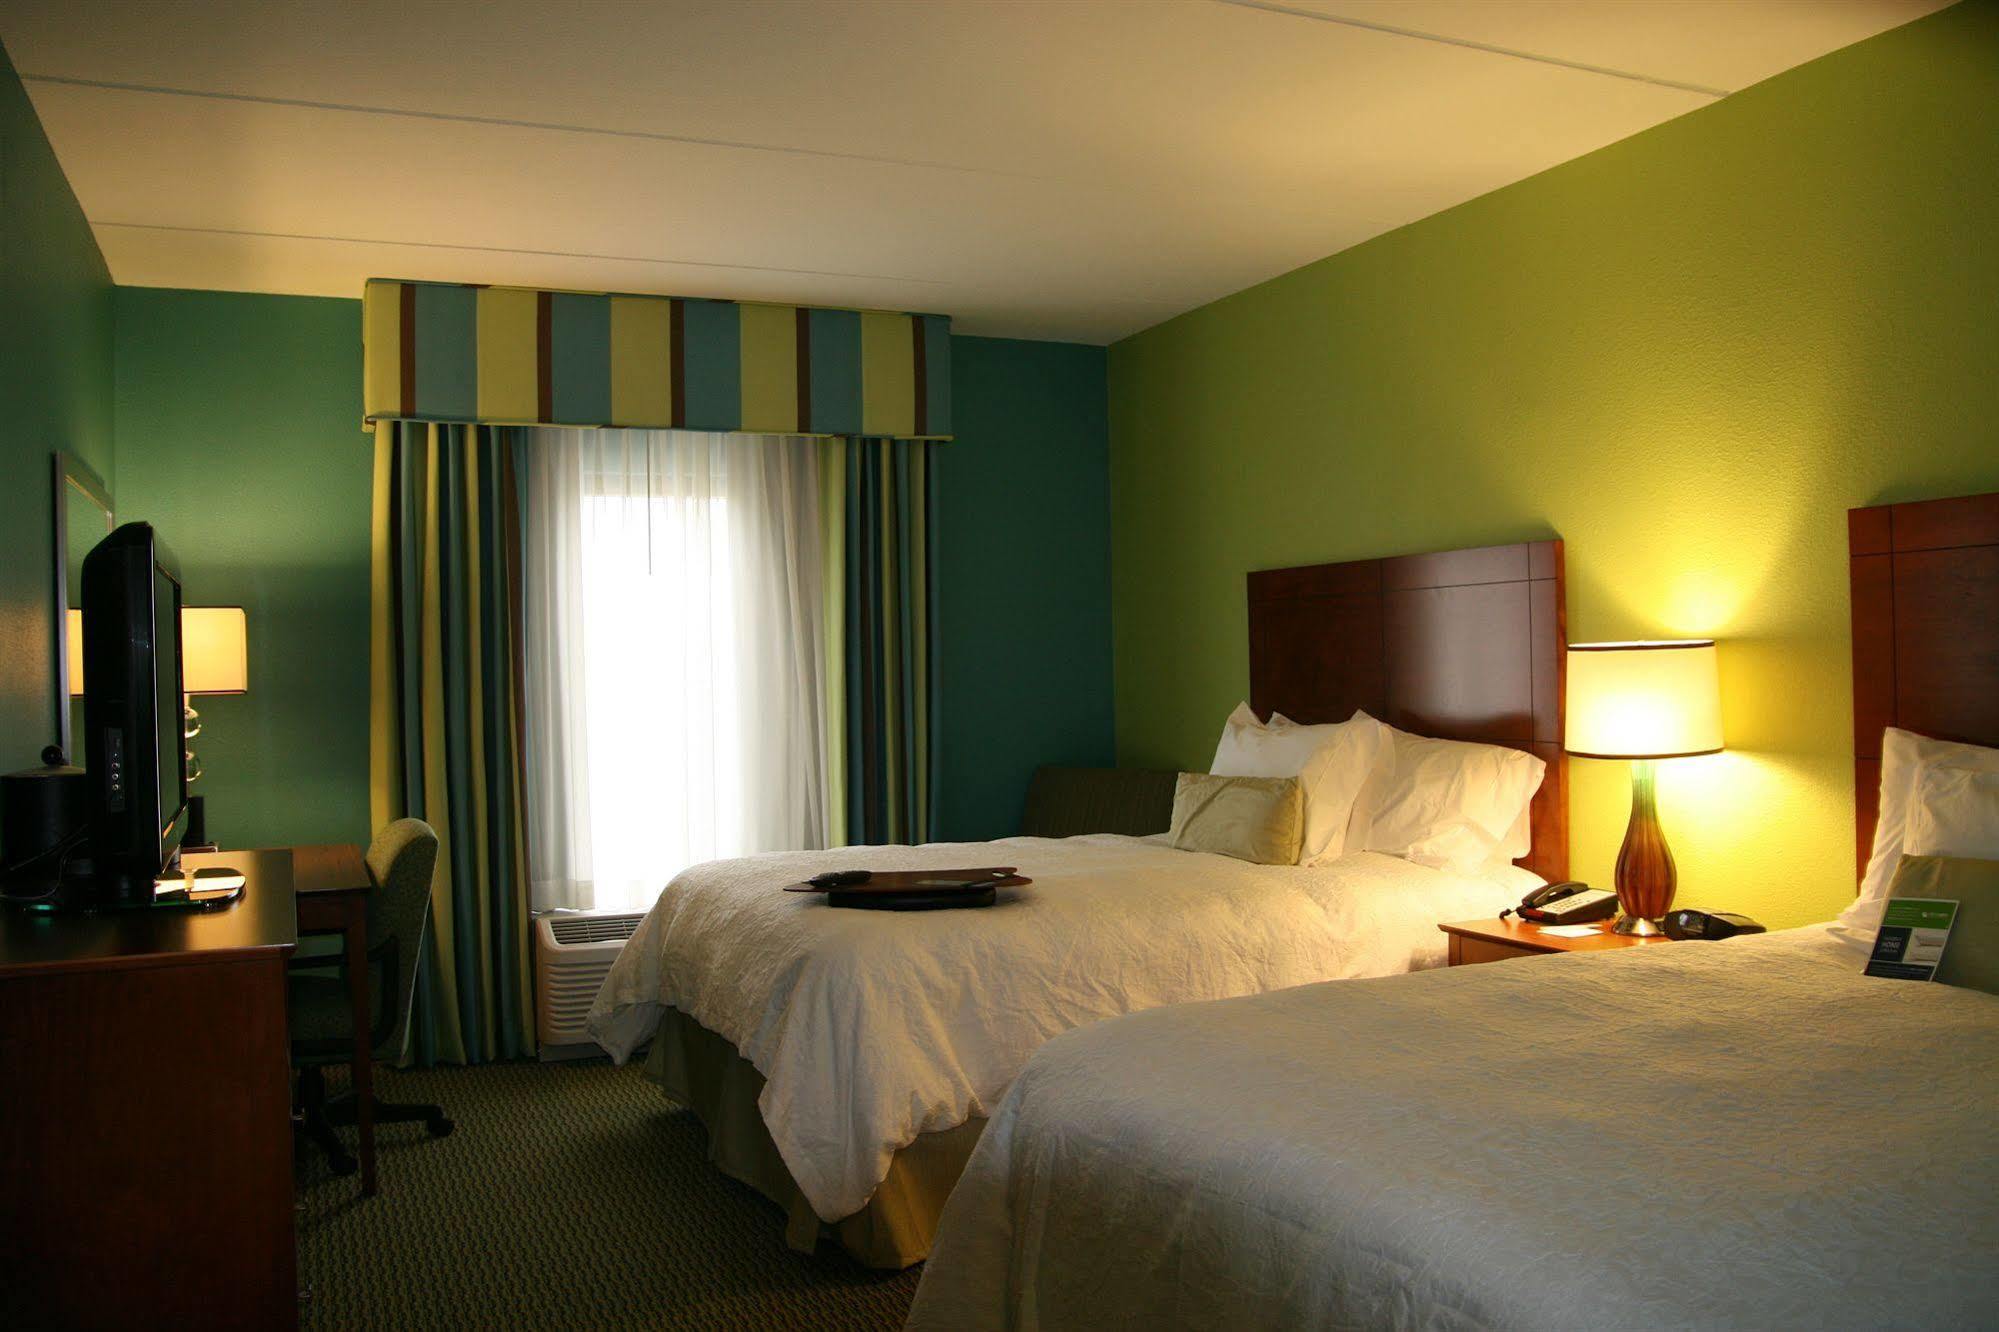 فندق Bermuda Runفي  هامبتون إن بيرمودا ران/أدفانس آي 40، نورث كارولينا الغرفة الصورة